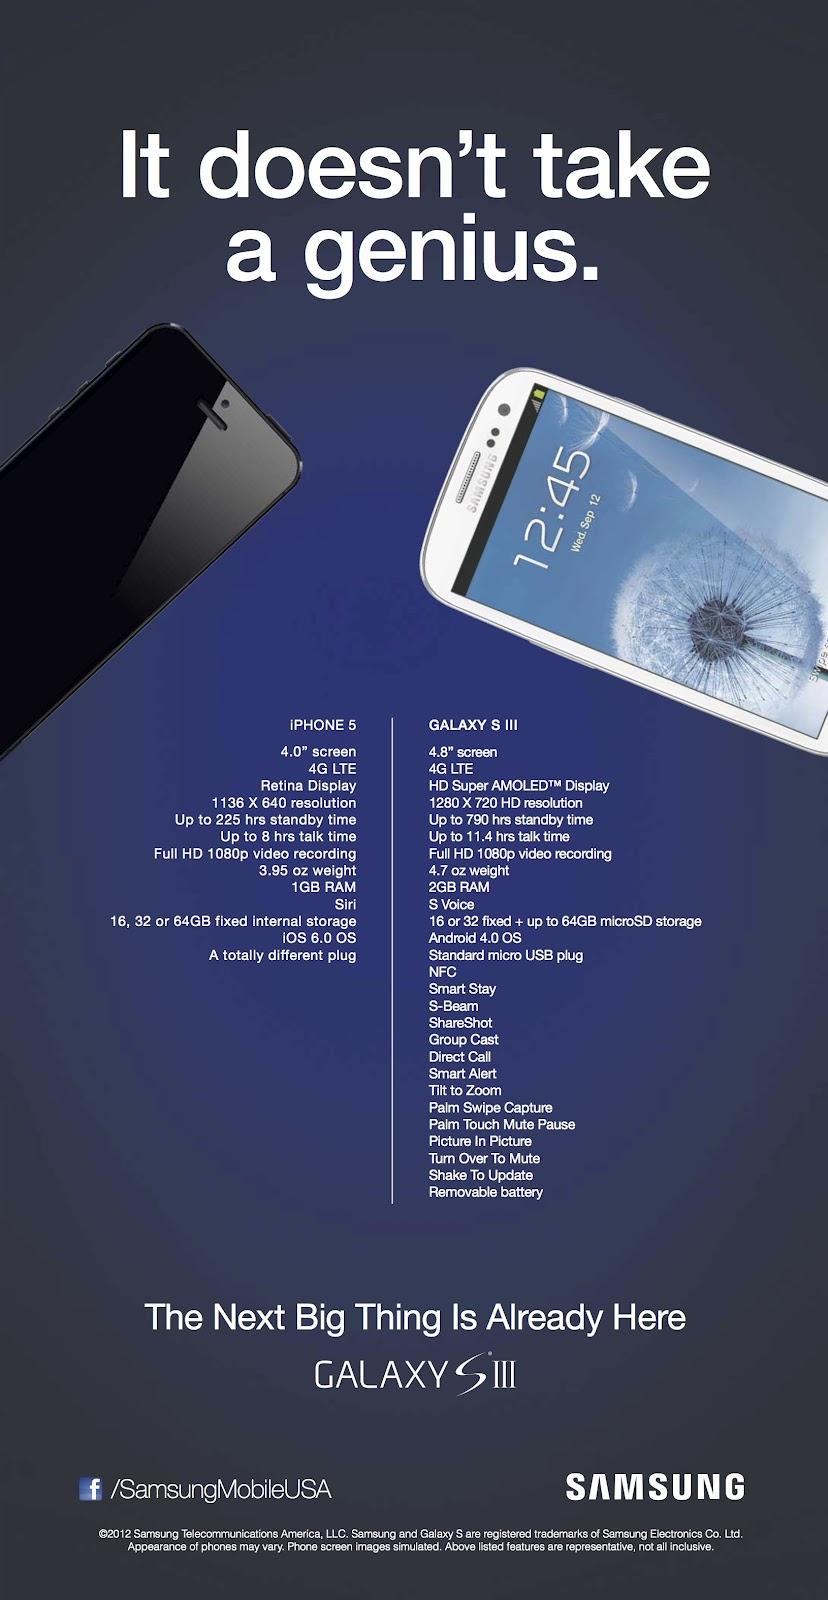 La publicité Samsung qui compare le Galaxy S3 avec l’iPhone 5